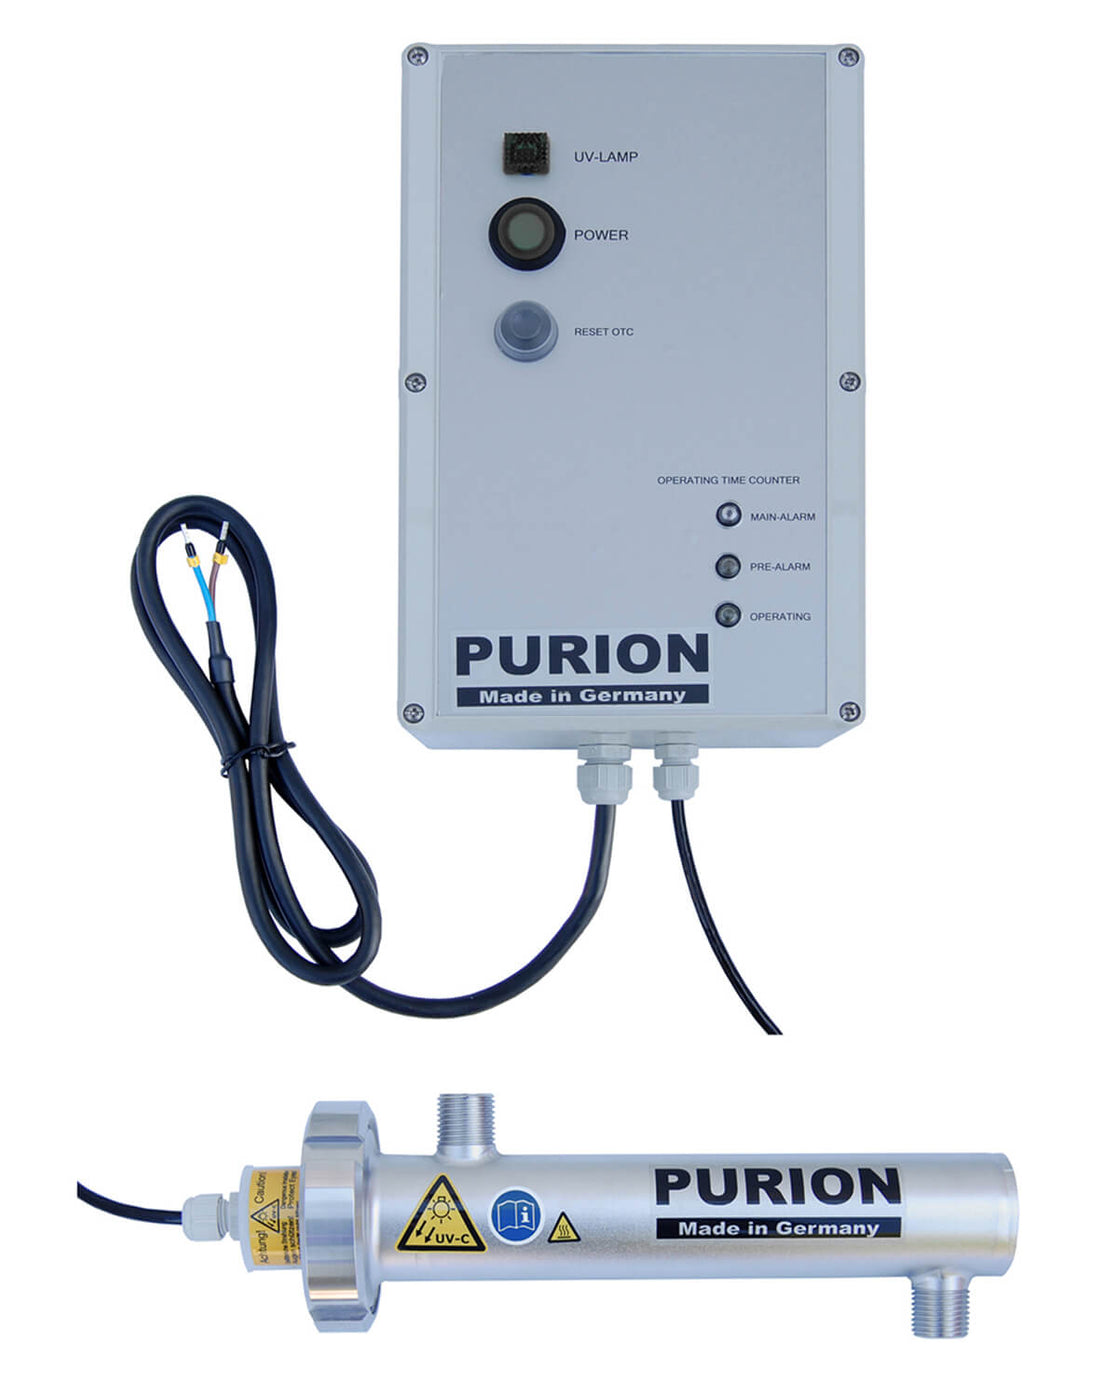 Holen Sie sich entkeimtes Trinkwasser mit dem leistungsstarken PURION 400 12 V/24 V DC OTC, ausgestattet mit einer UV-C-Lampe mit 10W. Erleben Sie die außergewöhnlichen Reinigungsleistungen der PURION GmbH.